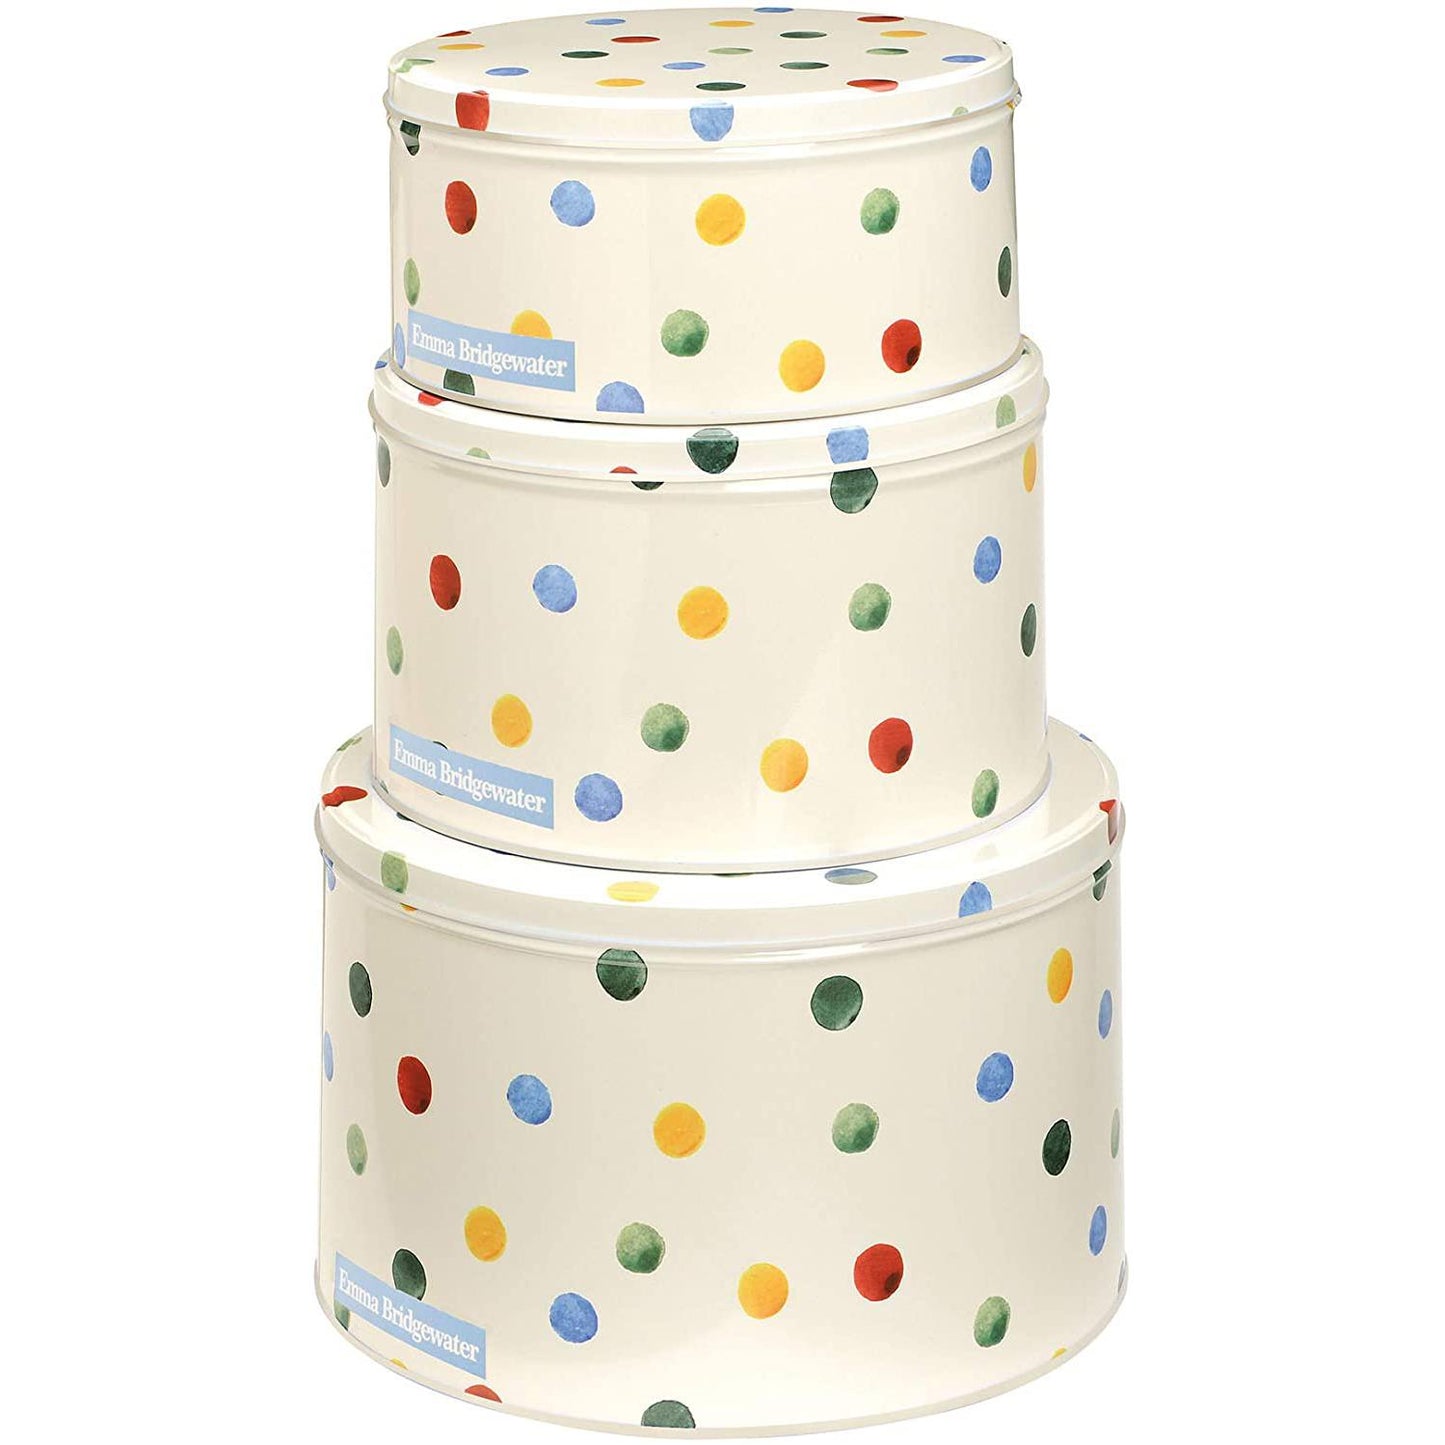 Emma Bridgewater Polka Dot Set Round Cake Tins